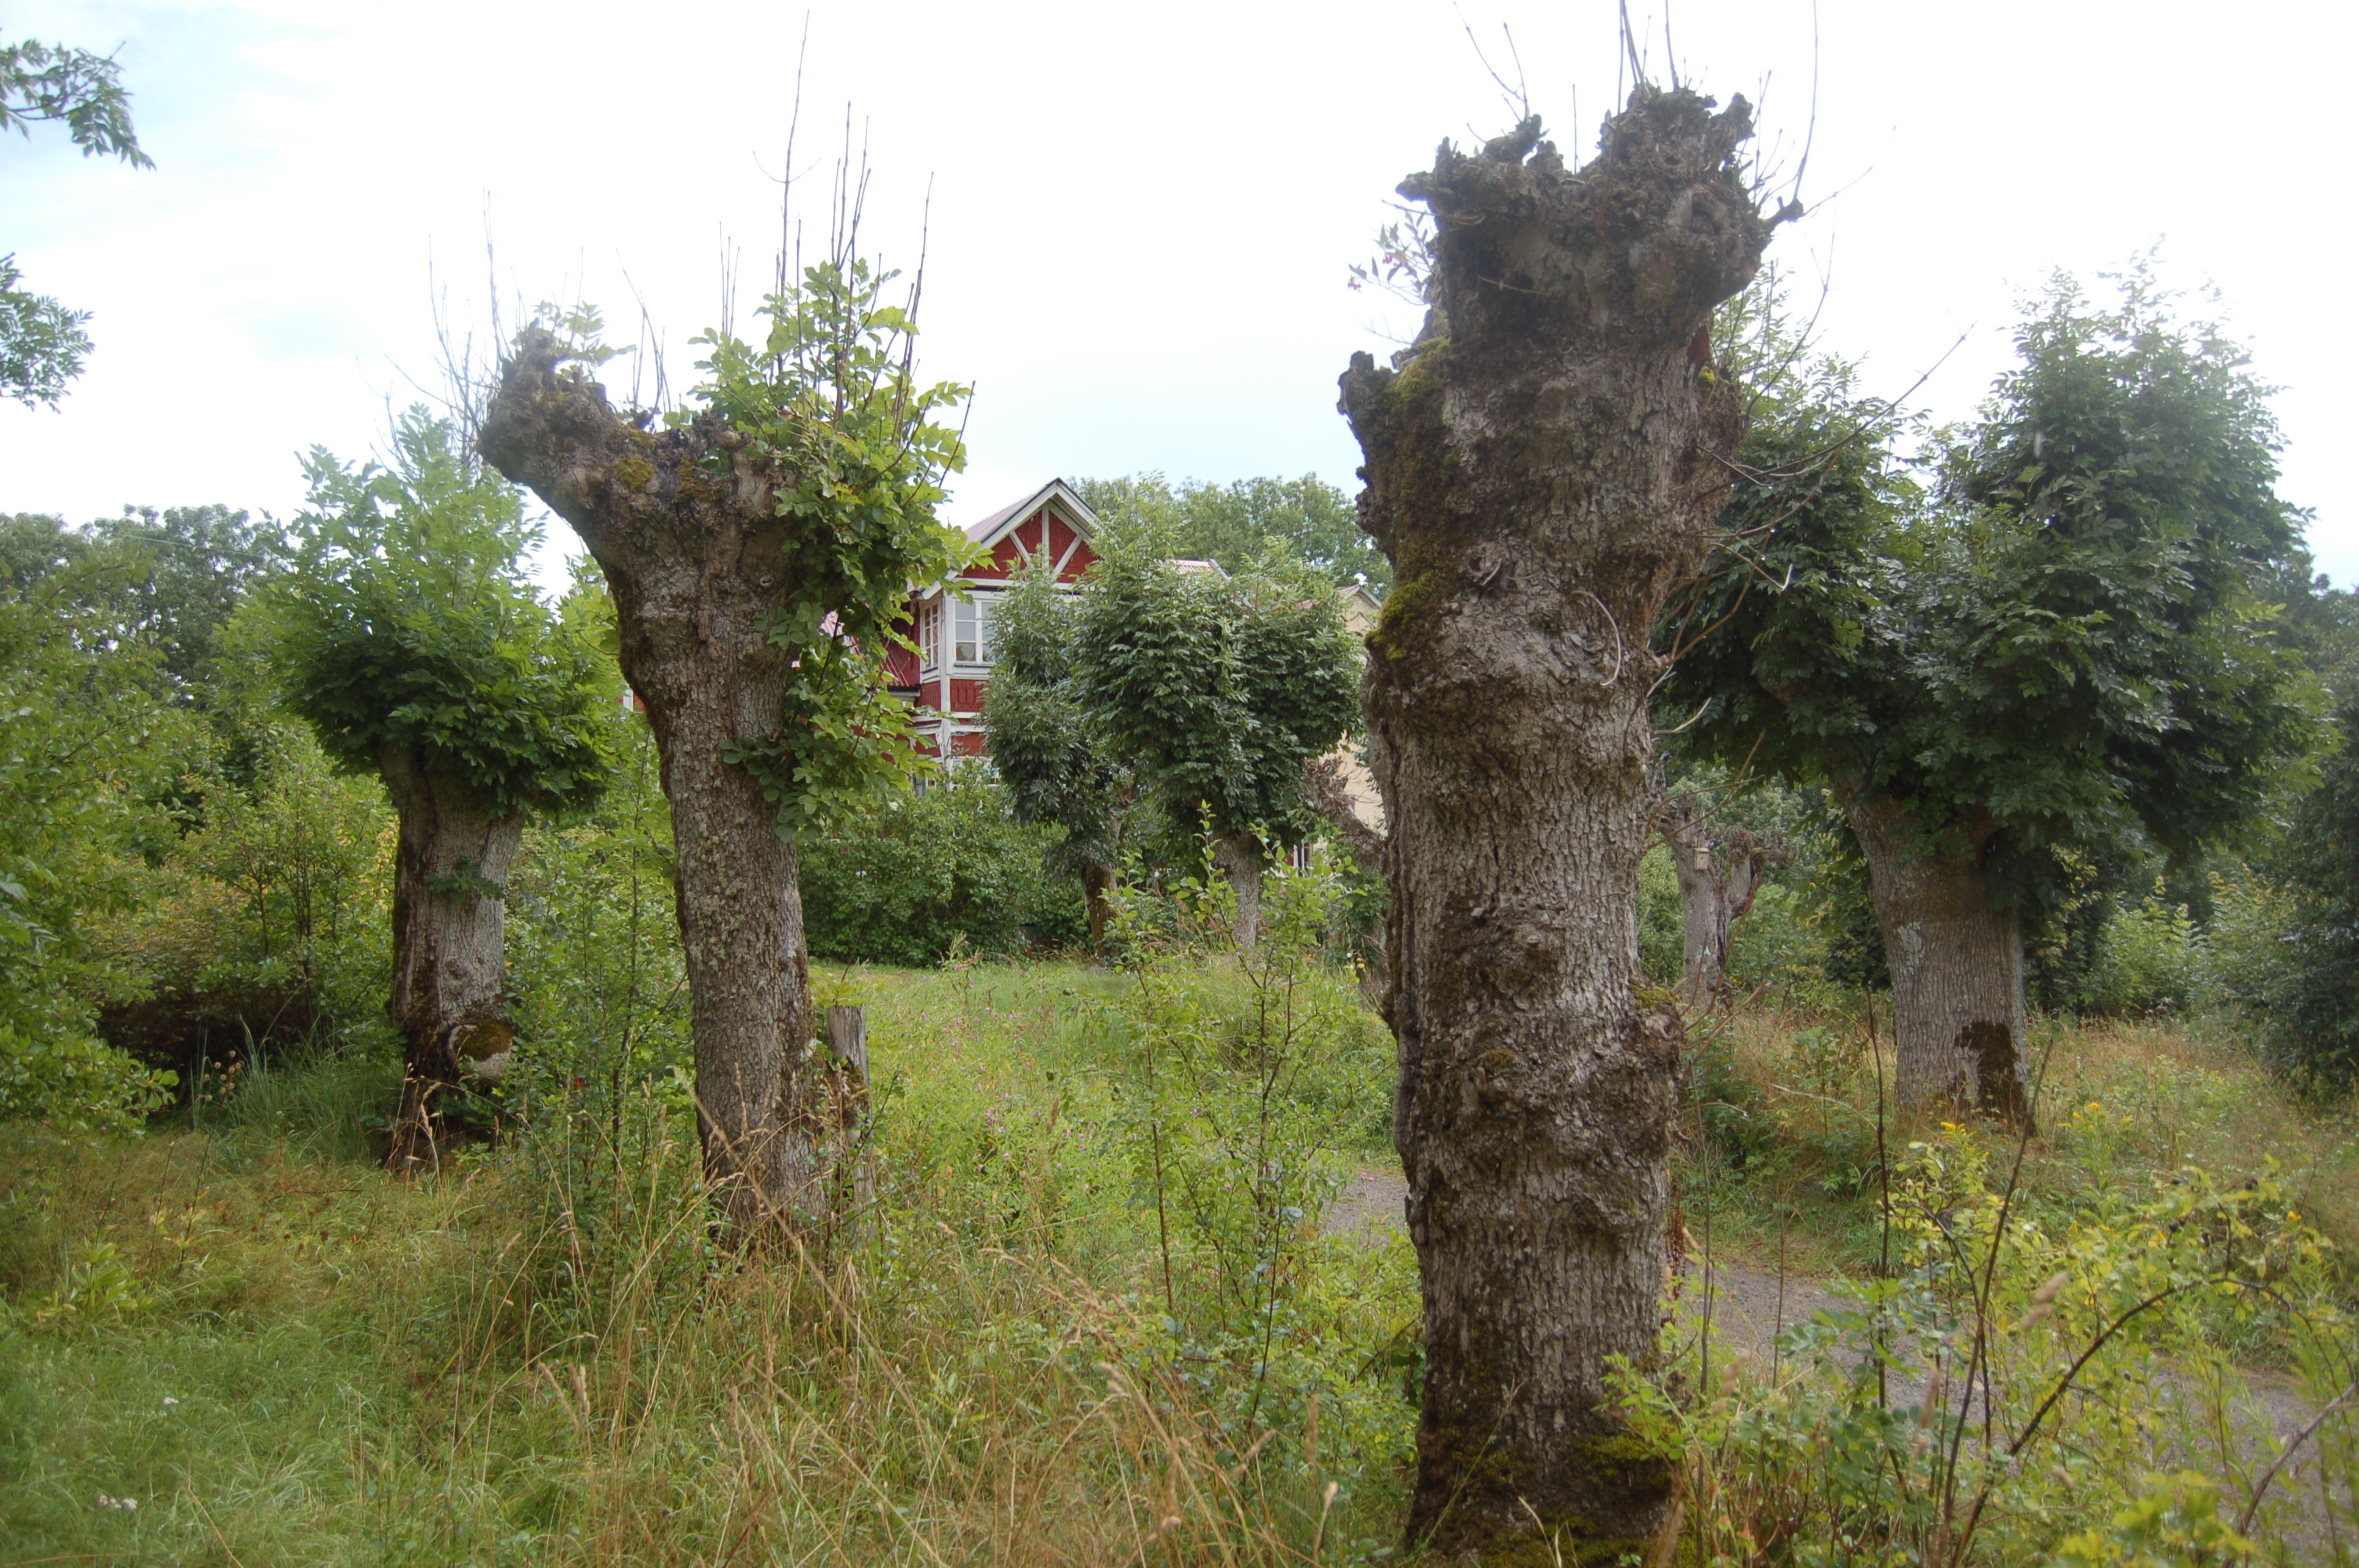 Den före detta odlingsmarken hålls öppen kring Alsviks by. Området präglas av ett ålderdomligt kulturlandskap med stenmurar och äldre alléer av hamlade askar.